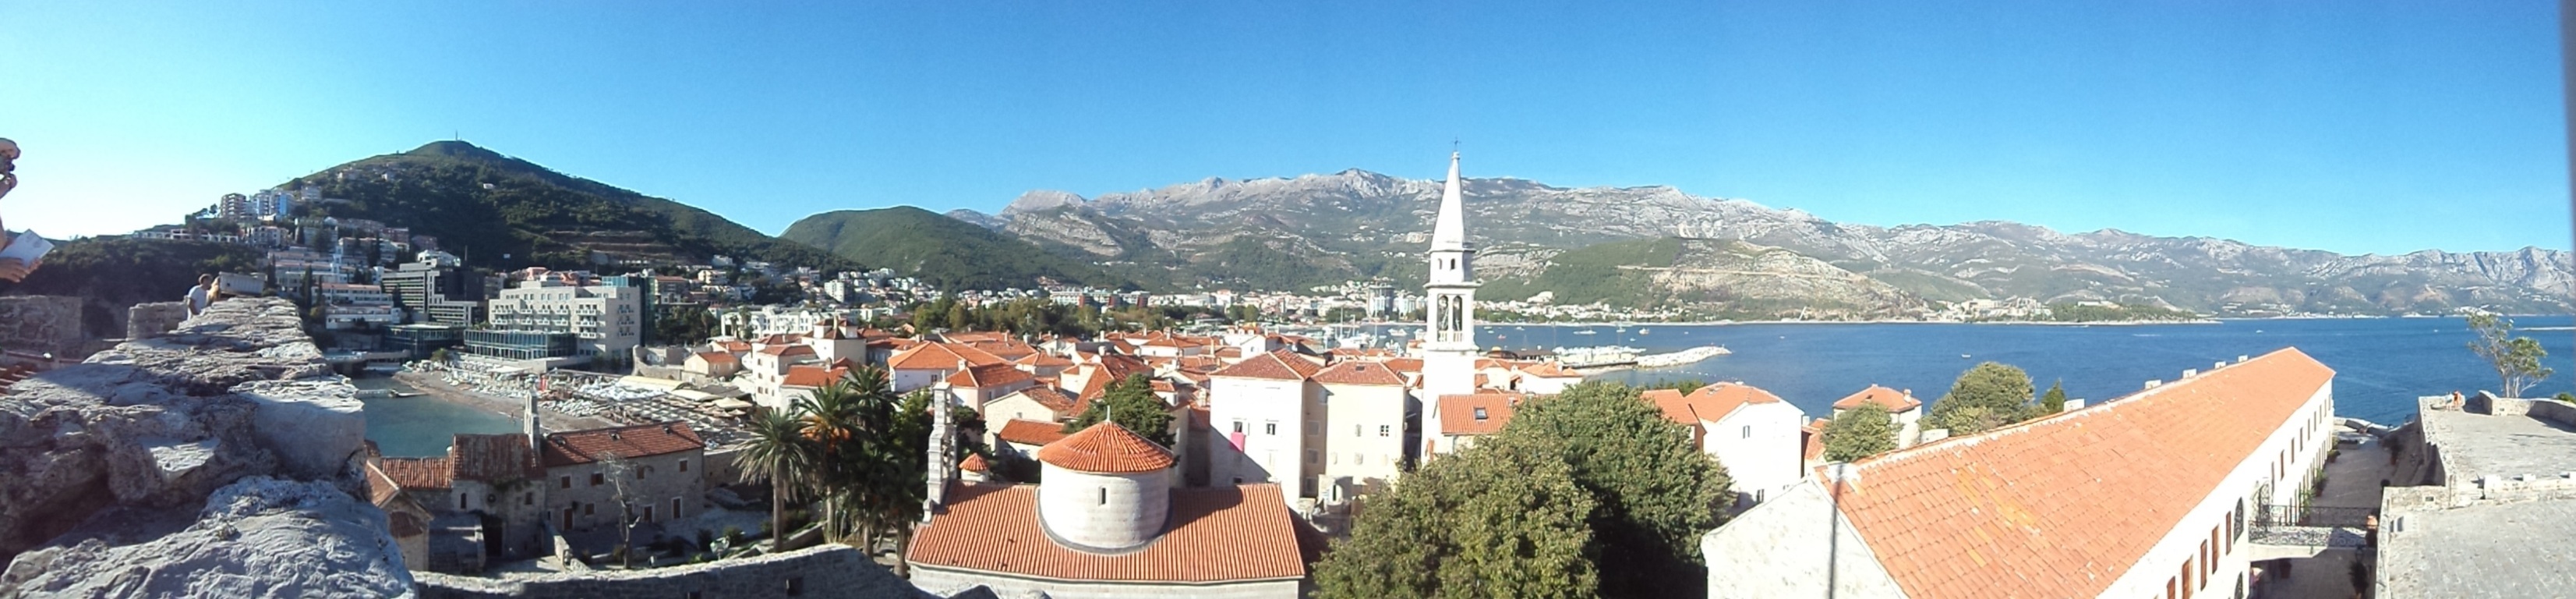 Panorâmica do Centro Histórico e praias de Budva, Montenegro